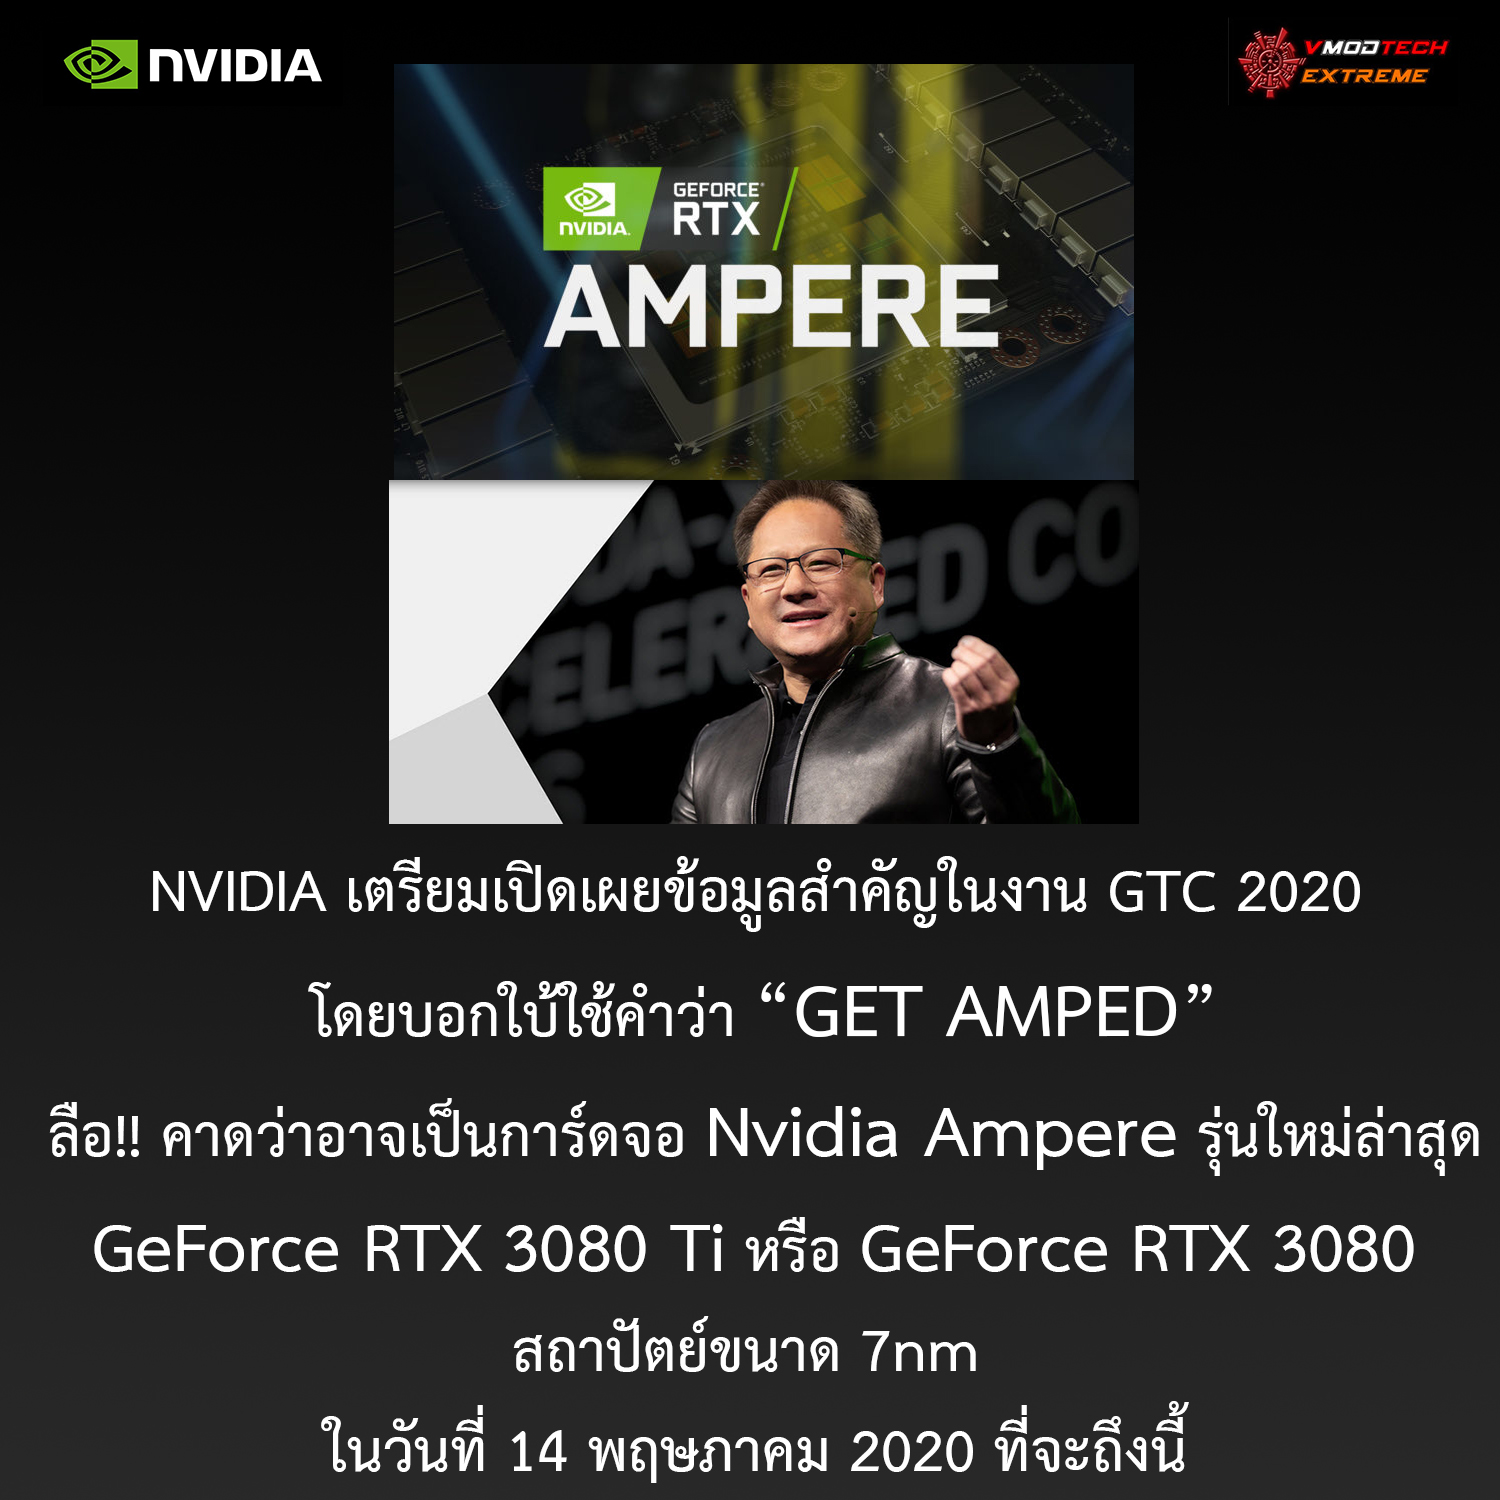 nvidia ampere gtc 2020 rtx3080ti 3080 NVIDIA เตรียมเปิดเผยข้อมูลสำคัญพร้อมบอกใบ้ “GET AMPED” ในงาน GTC 2020 ที่กำลังจะมาถึงในวันที่ 14 พฤษภาคมที่จะถึงนี้ 